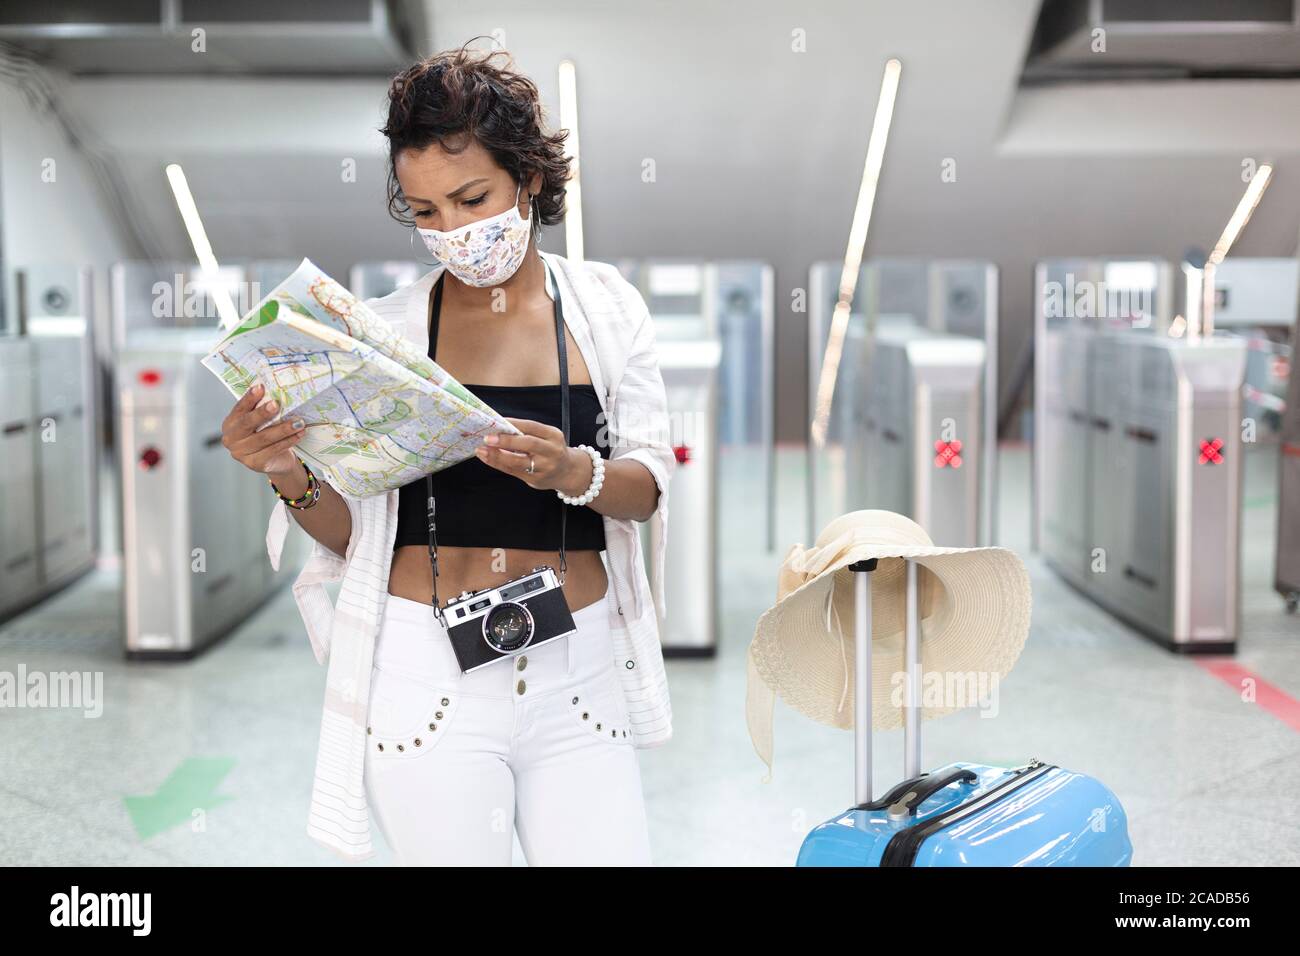 Reisende Frau mit einer Gesichtsmaske auf einer touristischen Karte. Sie steht neben einer Reisetasche. Neue normale Reise nach covid-19 Pandemiekonzept. Stockfoto